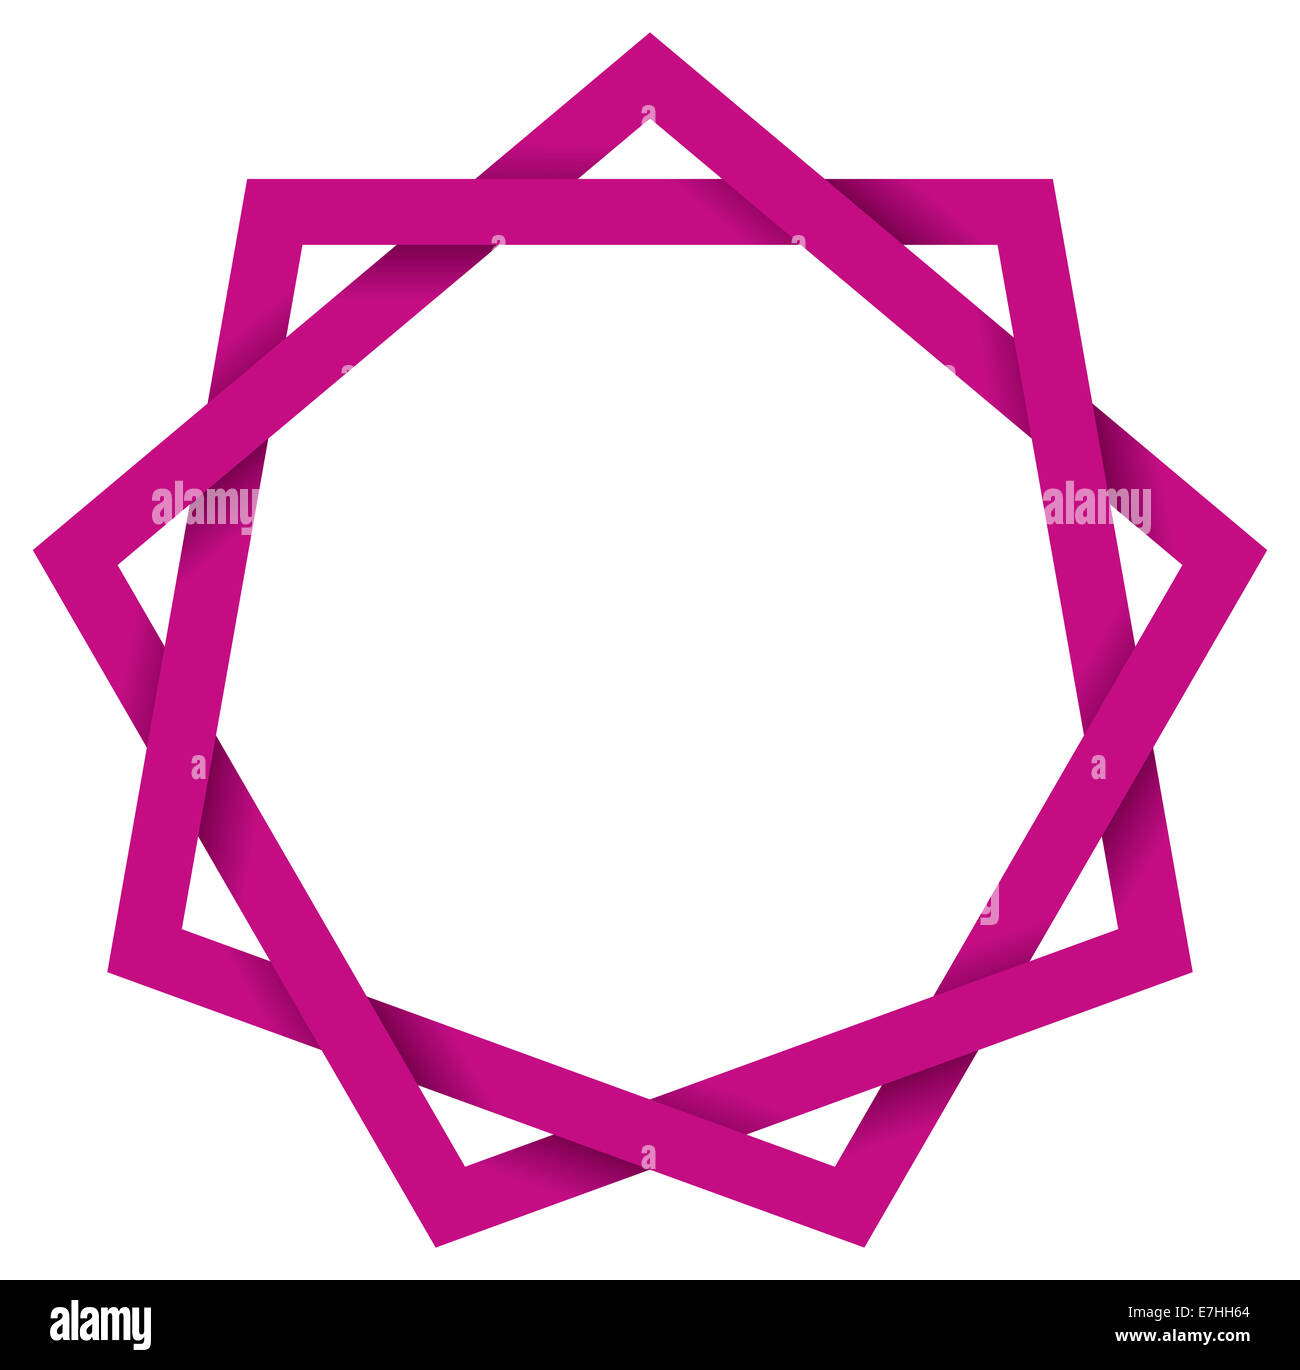 Violeta Eneagrama 3D - nueve puntas polígono estrella geométrica que puede extraerse con nueve trazos rectos. También llamado nonagram. Foto de stock